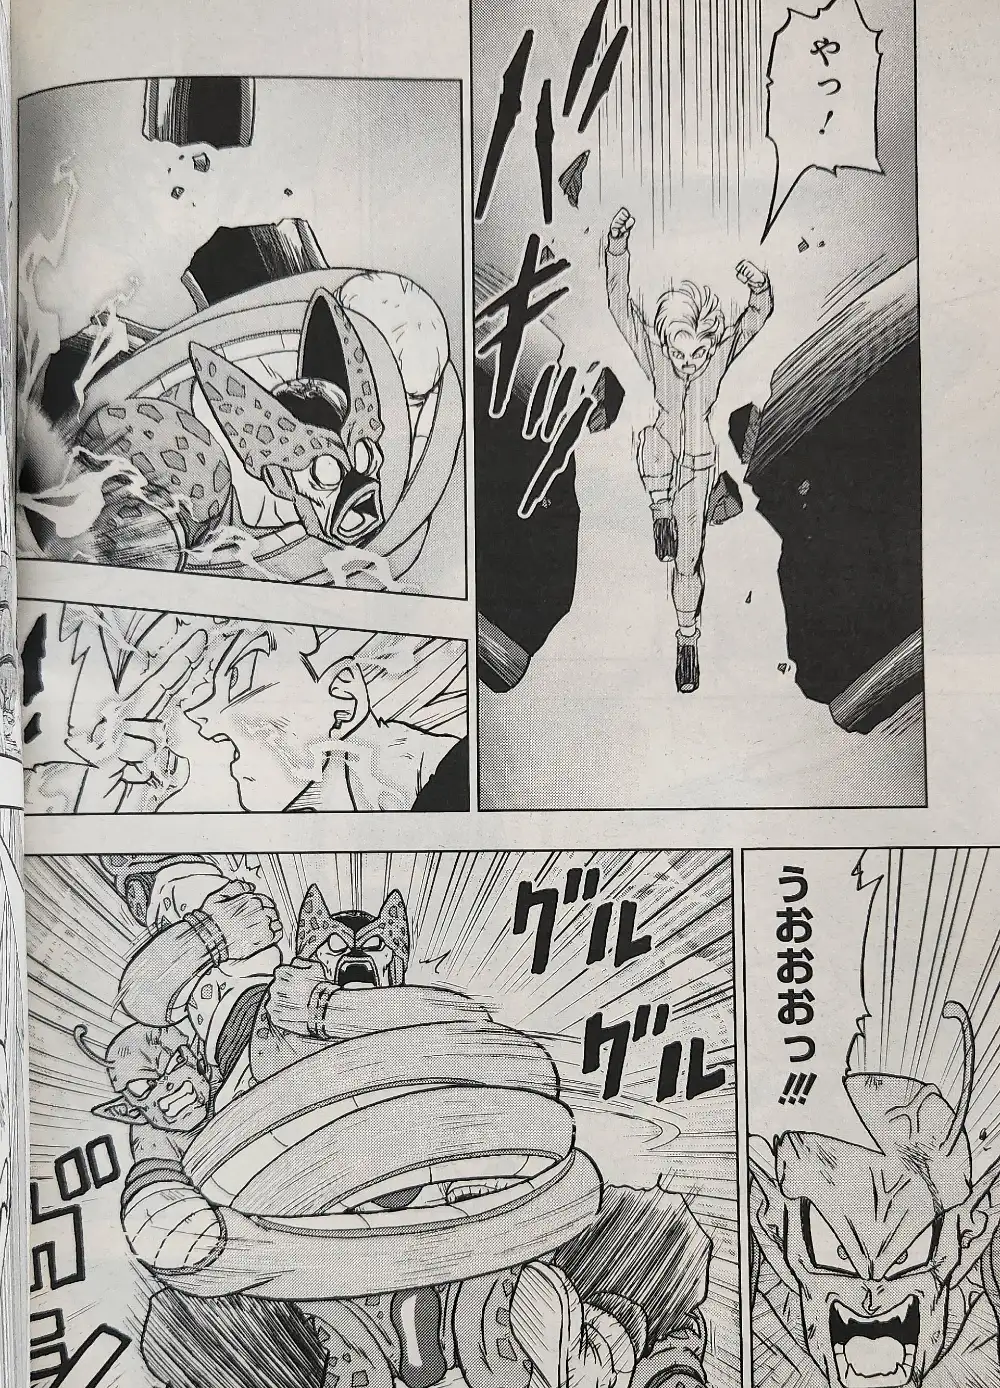 Gohan Beast dans le manga DBS chapitre 99 Image 000011